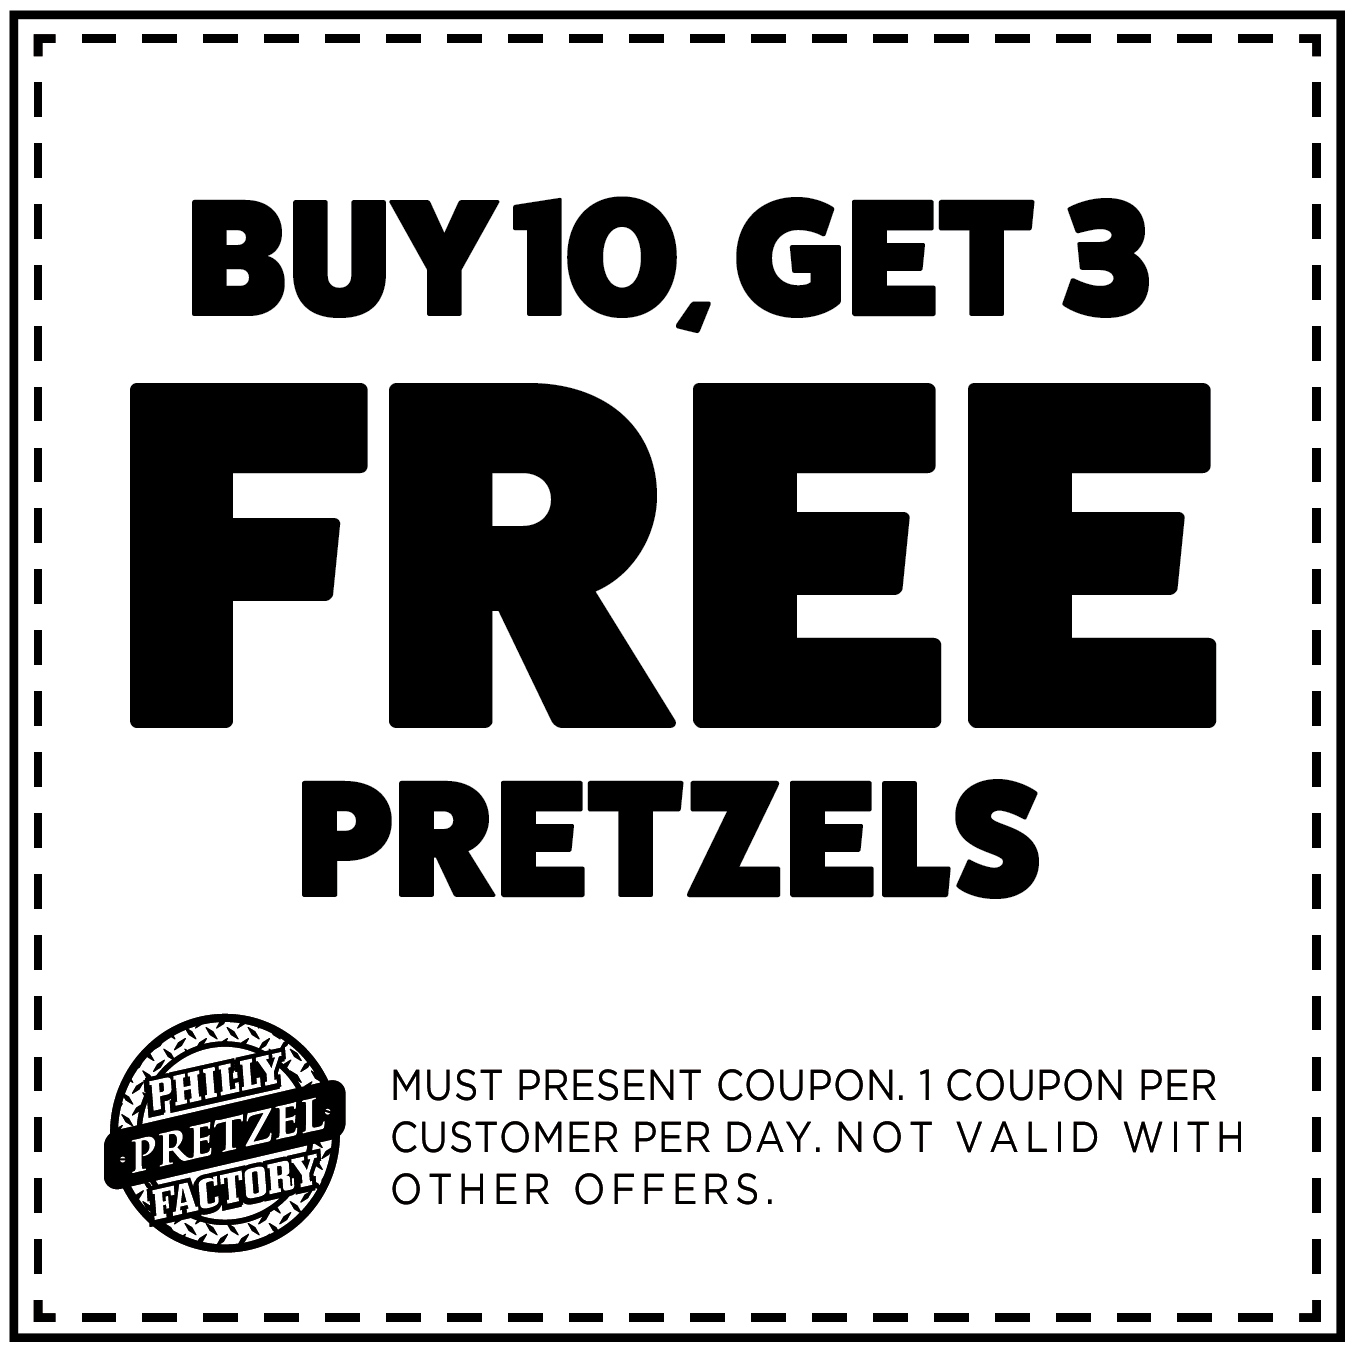 Buy 10, Get 3 Free Pretzels